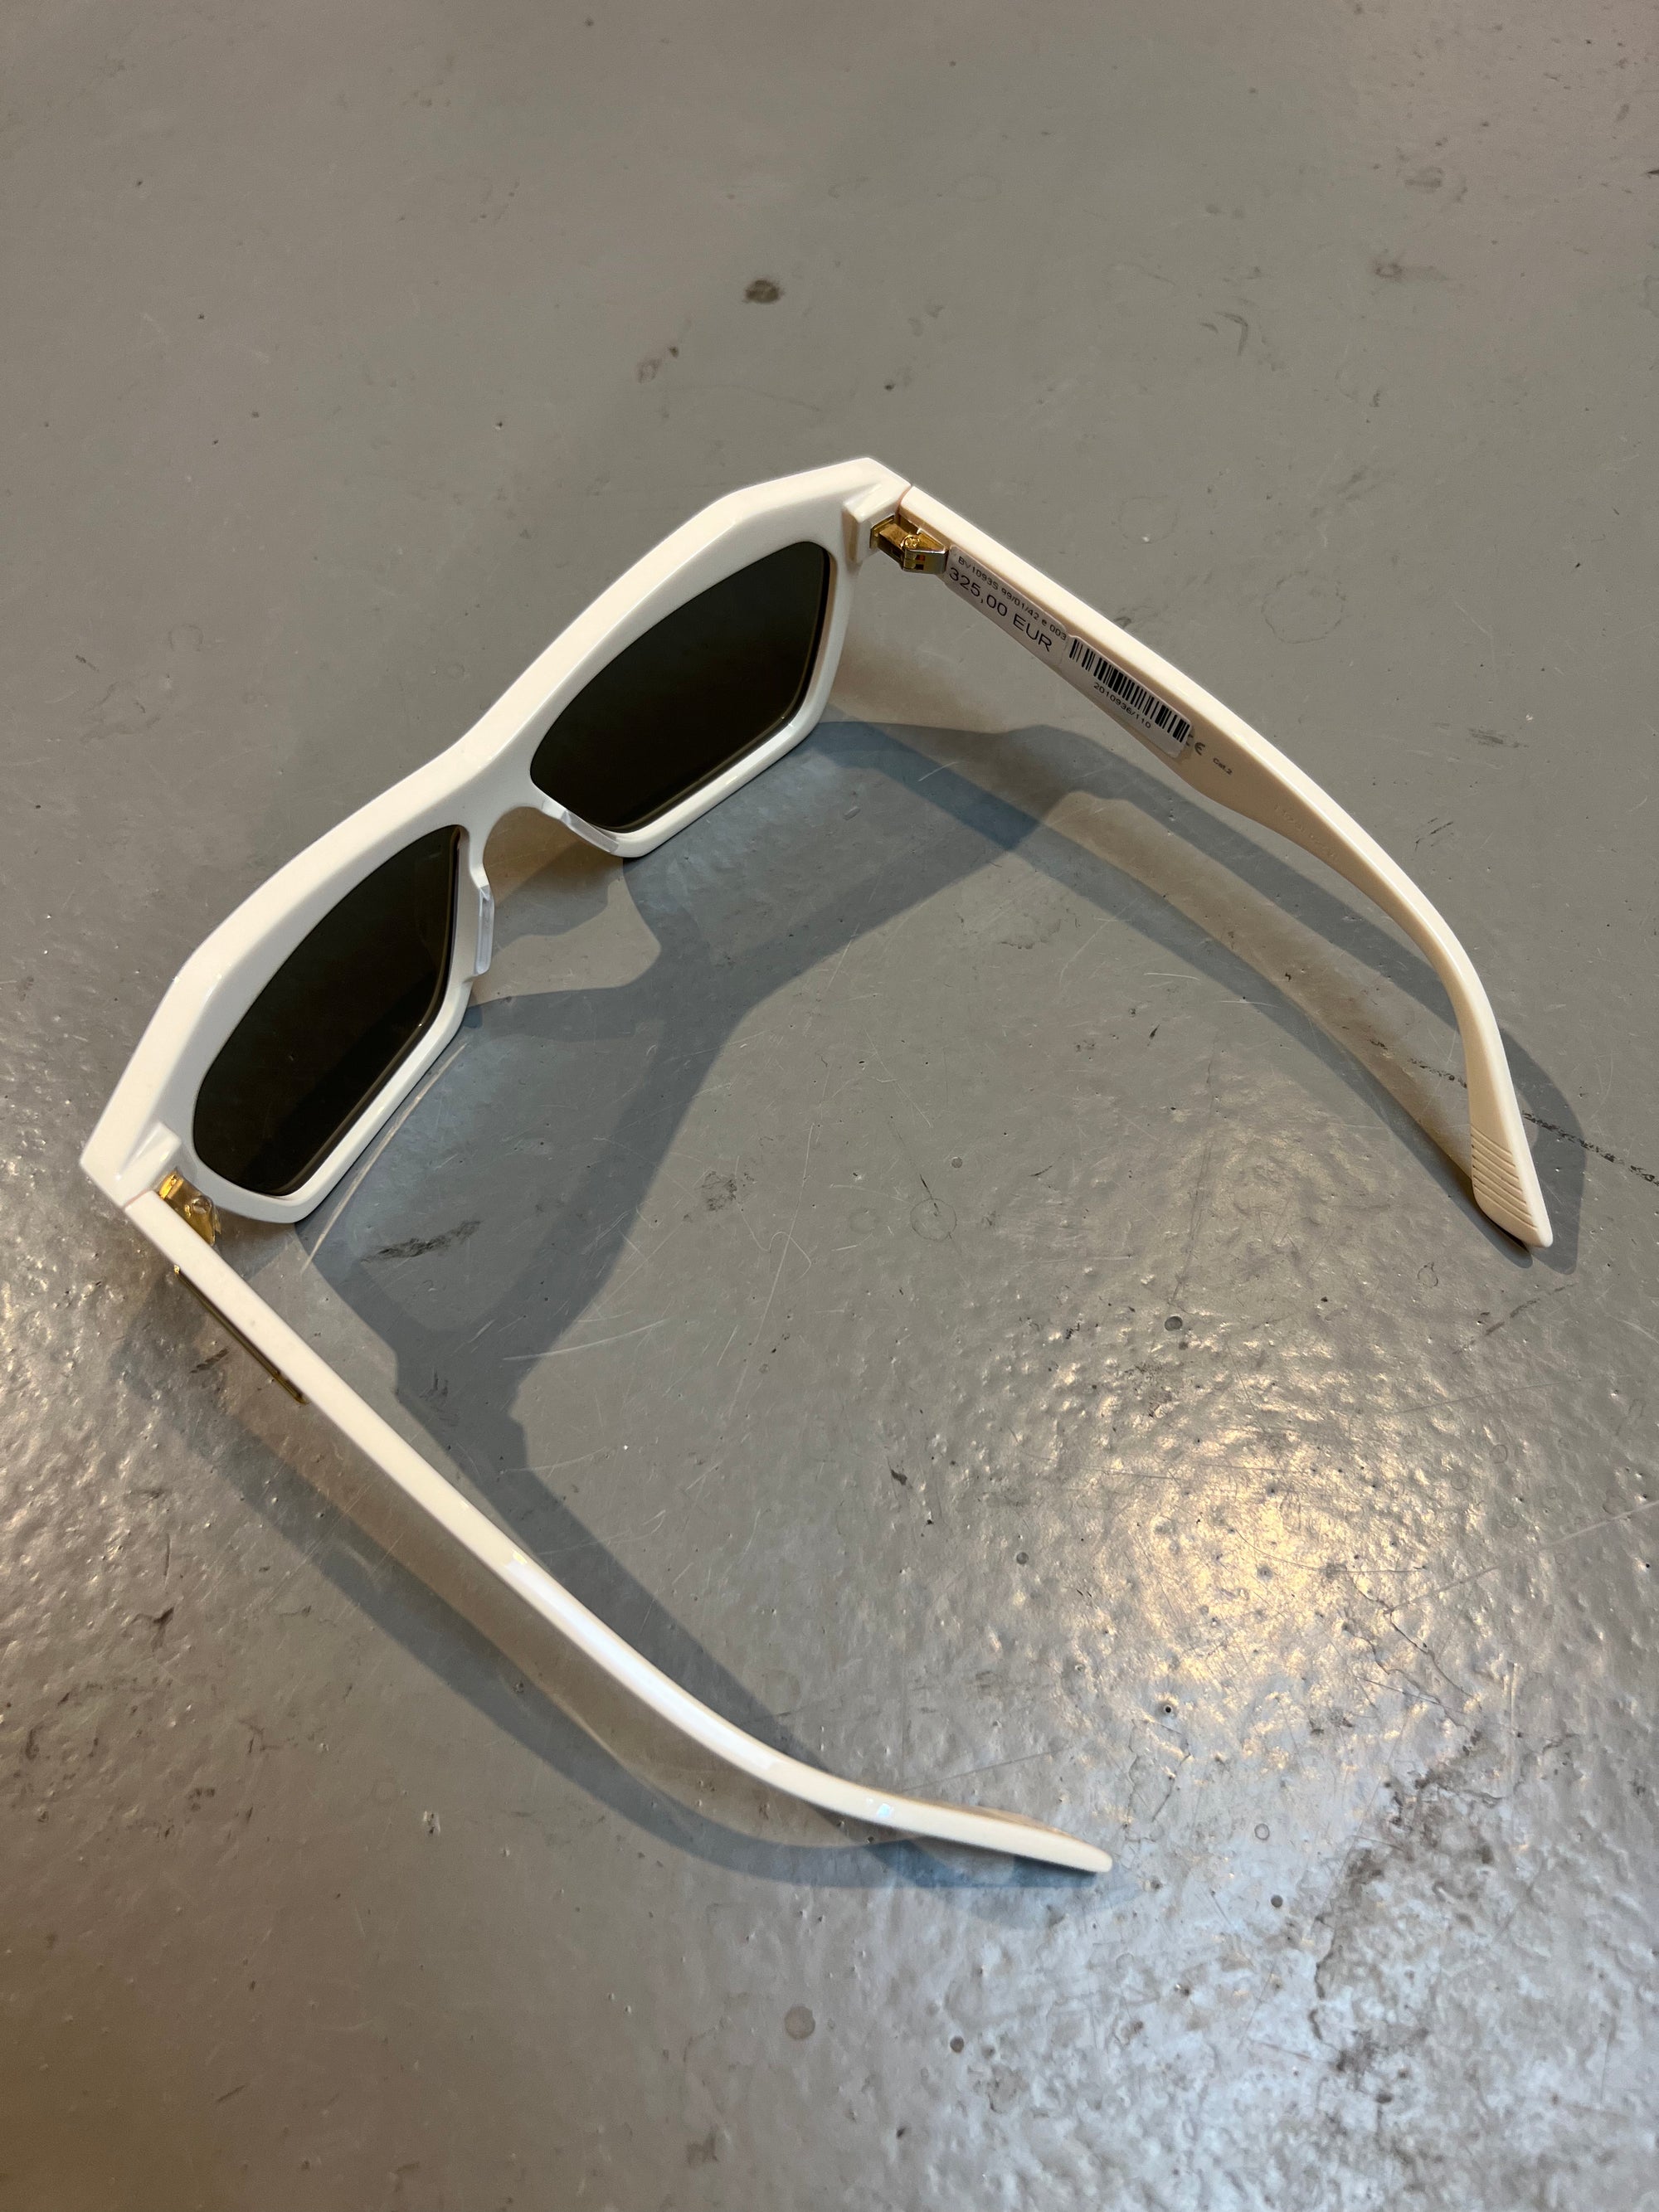 Produktbild von einer Bottega Veneta Sonnenbrille mit beigen Gehäuse vor einem grauen Hintergrund. 